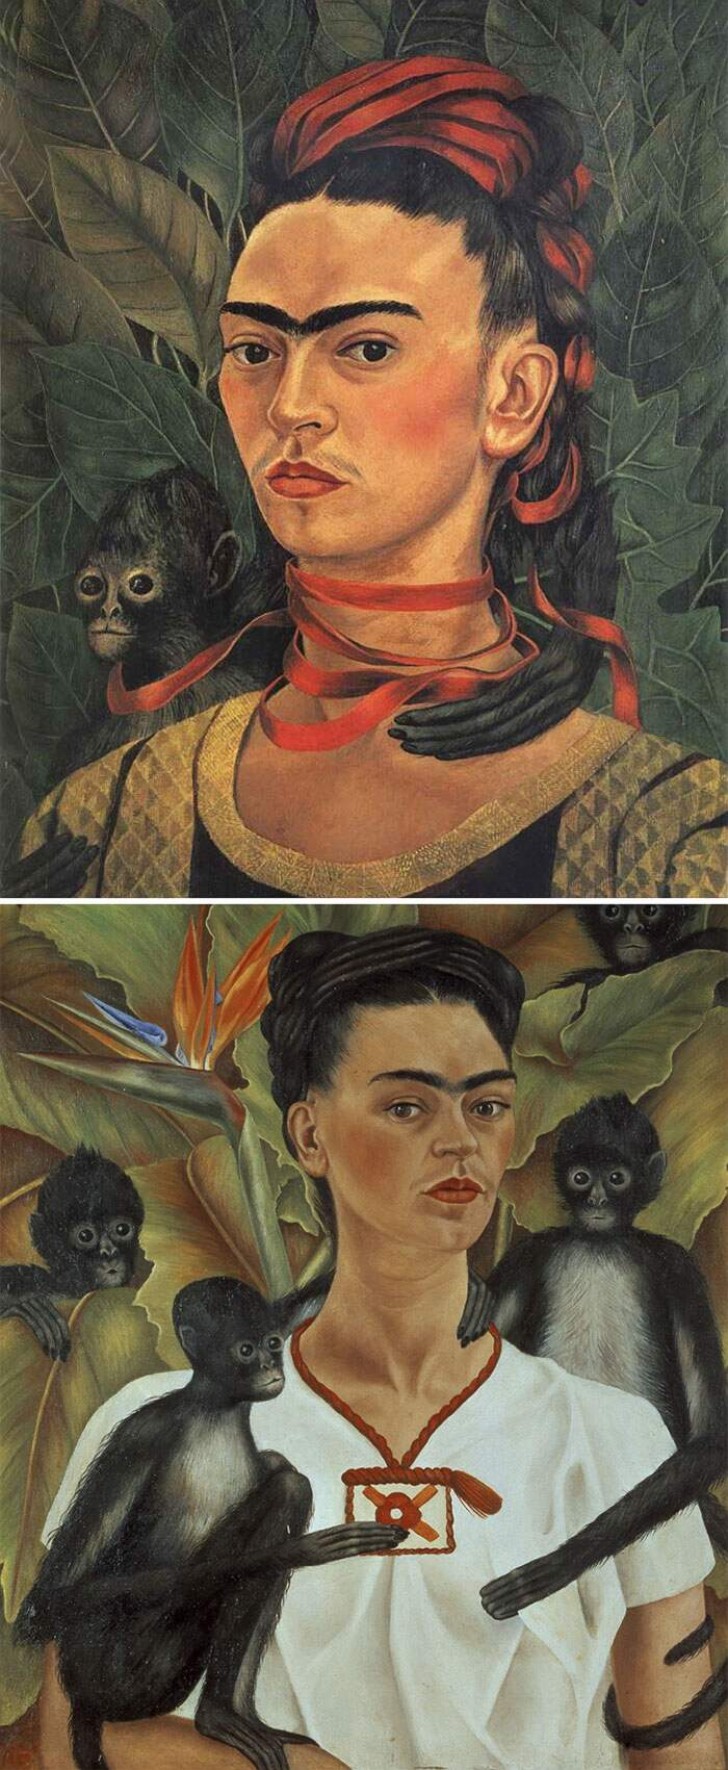 Si dans tous les portraits il y a une femme avec un mono-sourcil, ne vous inquiétez pas, c'est Frida Kahlo !